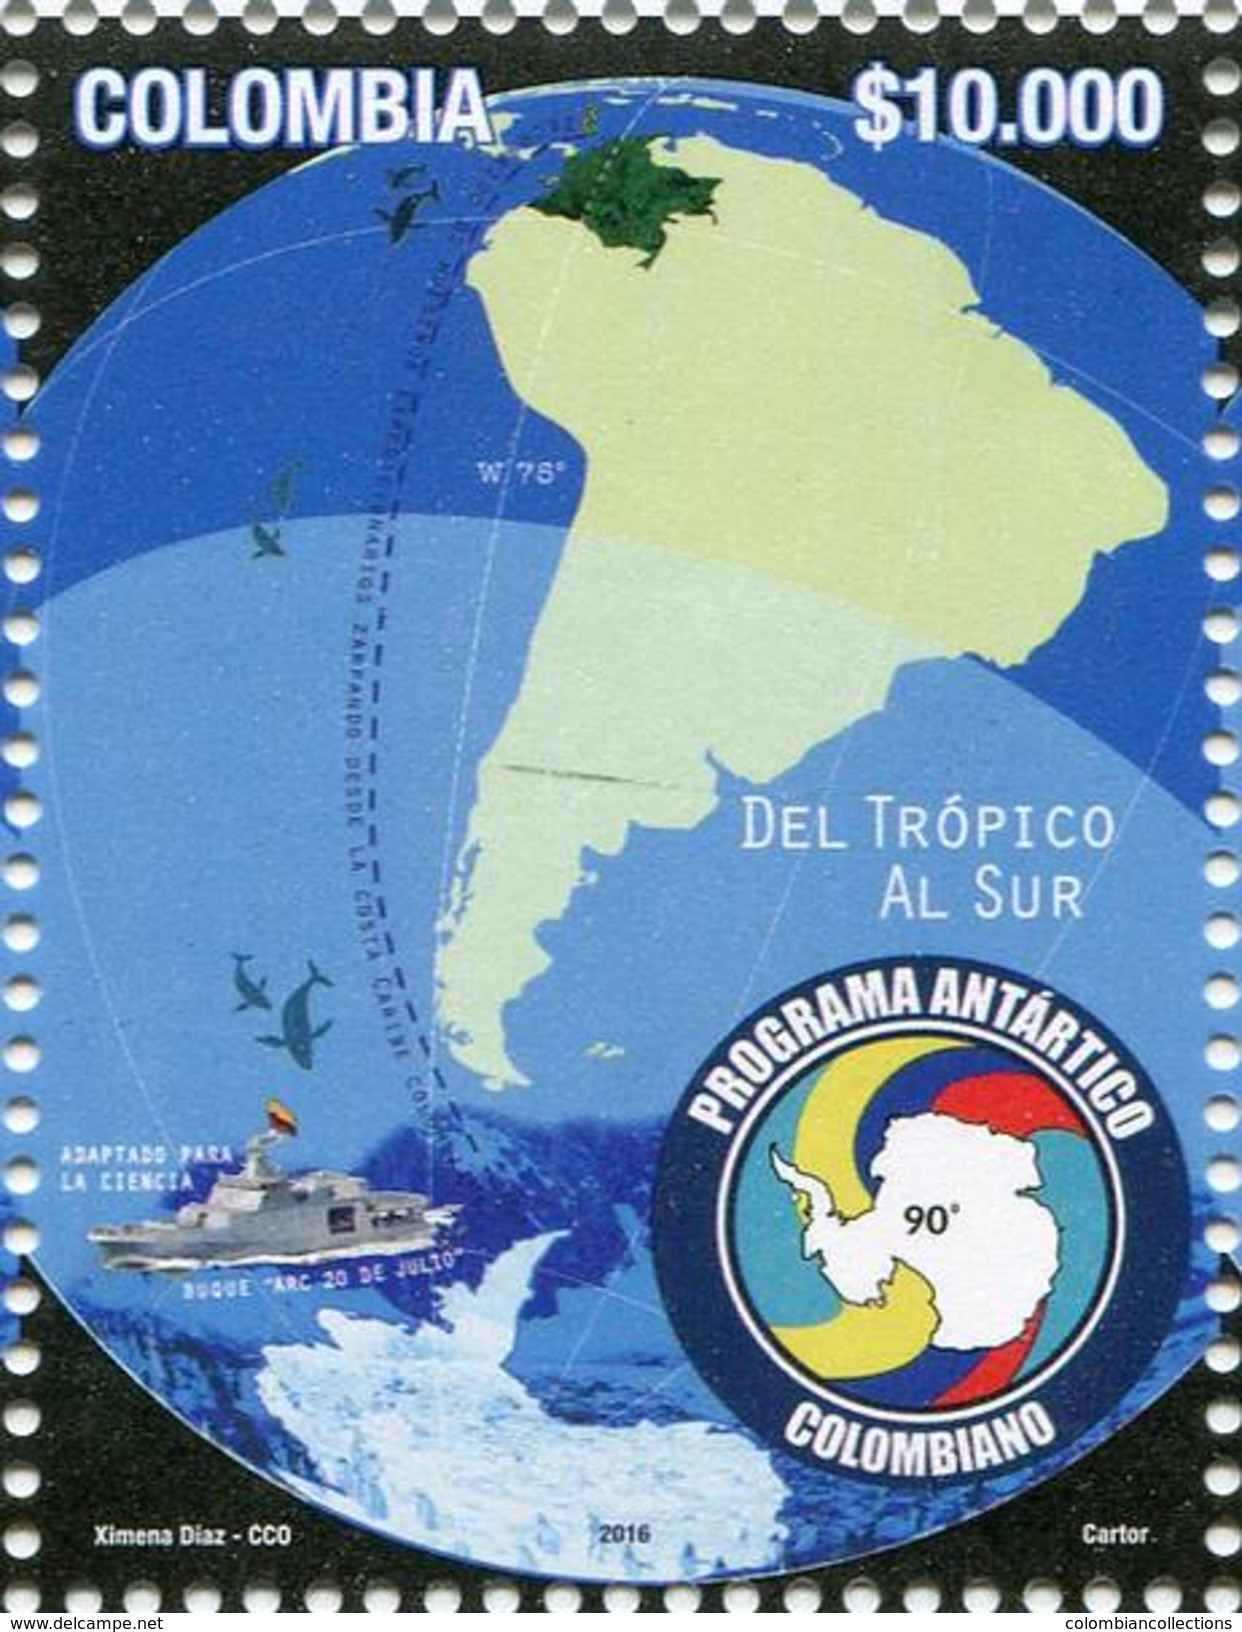 Lote 2016-14, Colombia, 2016, Sello, Stamp, Programa Antartico Colombiano, Antarctica, Boat, Penguin - Colombia